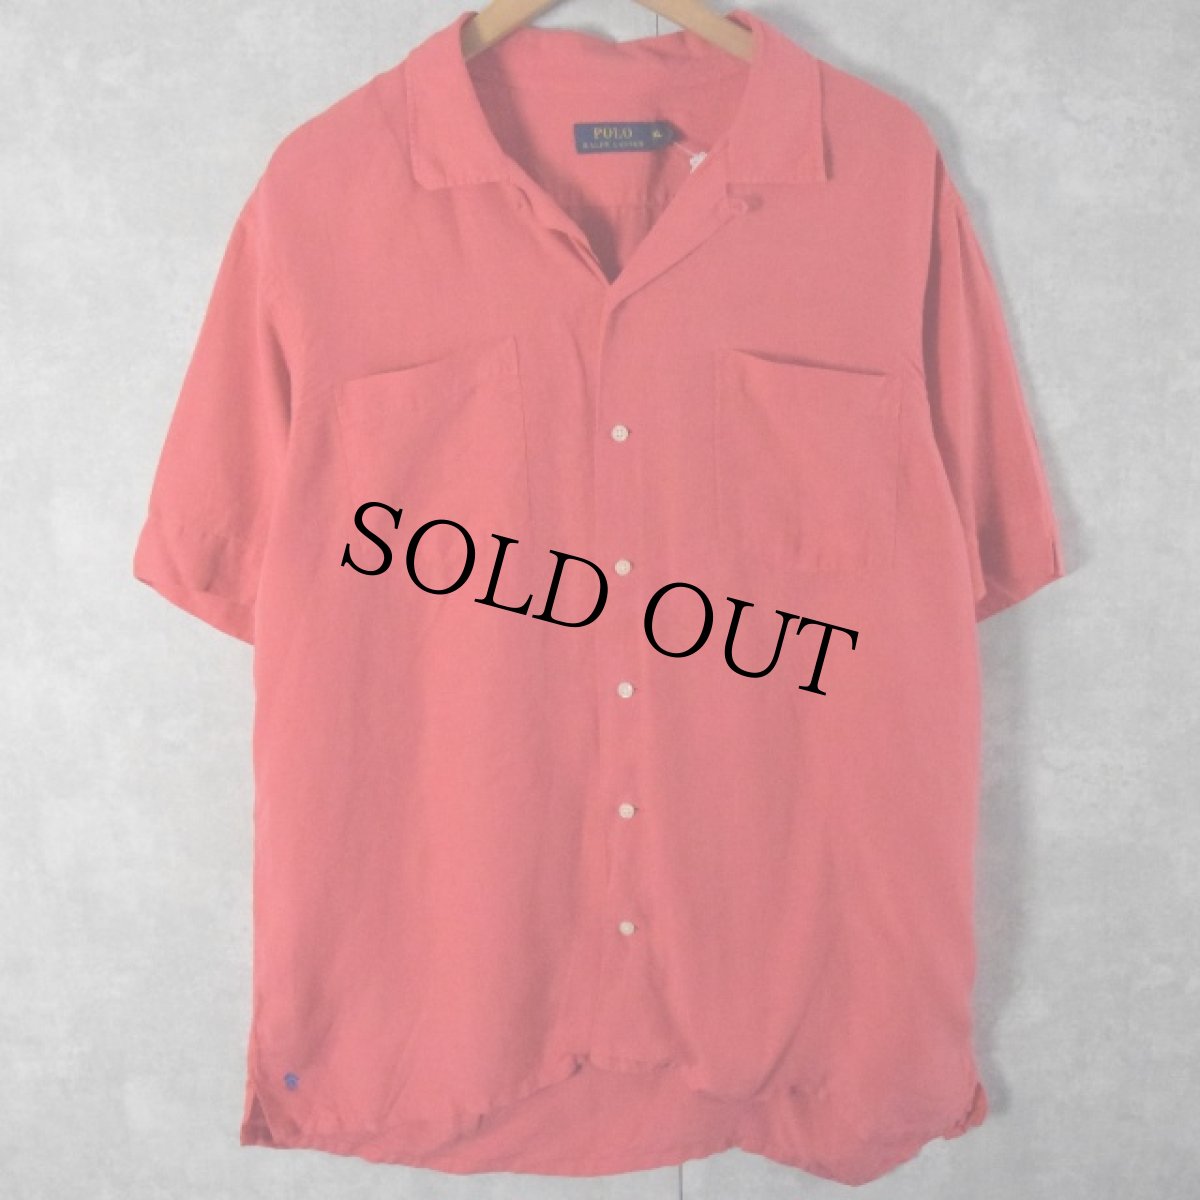 画像1: POLO Ralph Lauren リネン×シルク オープンカラーシャツ L (1)